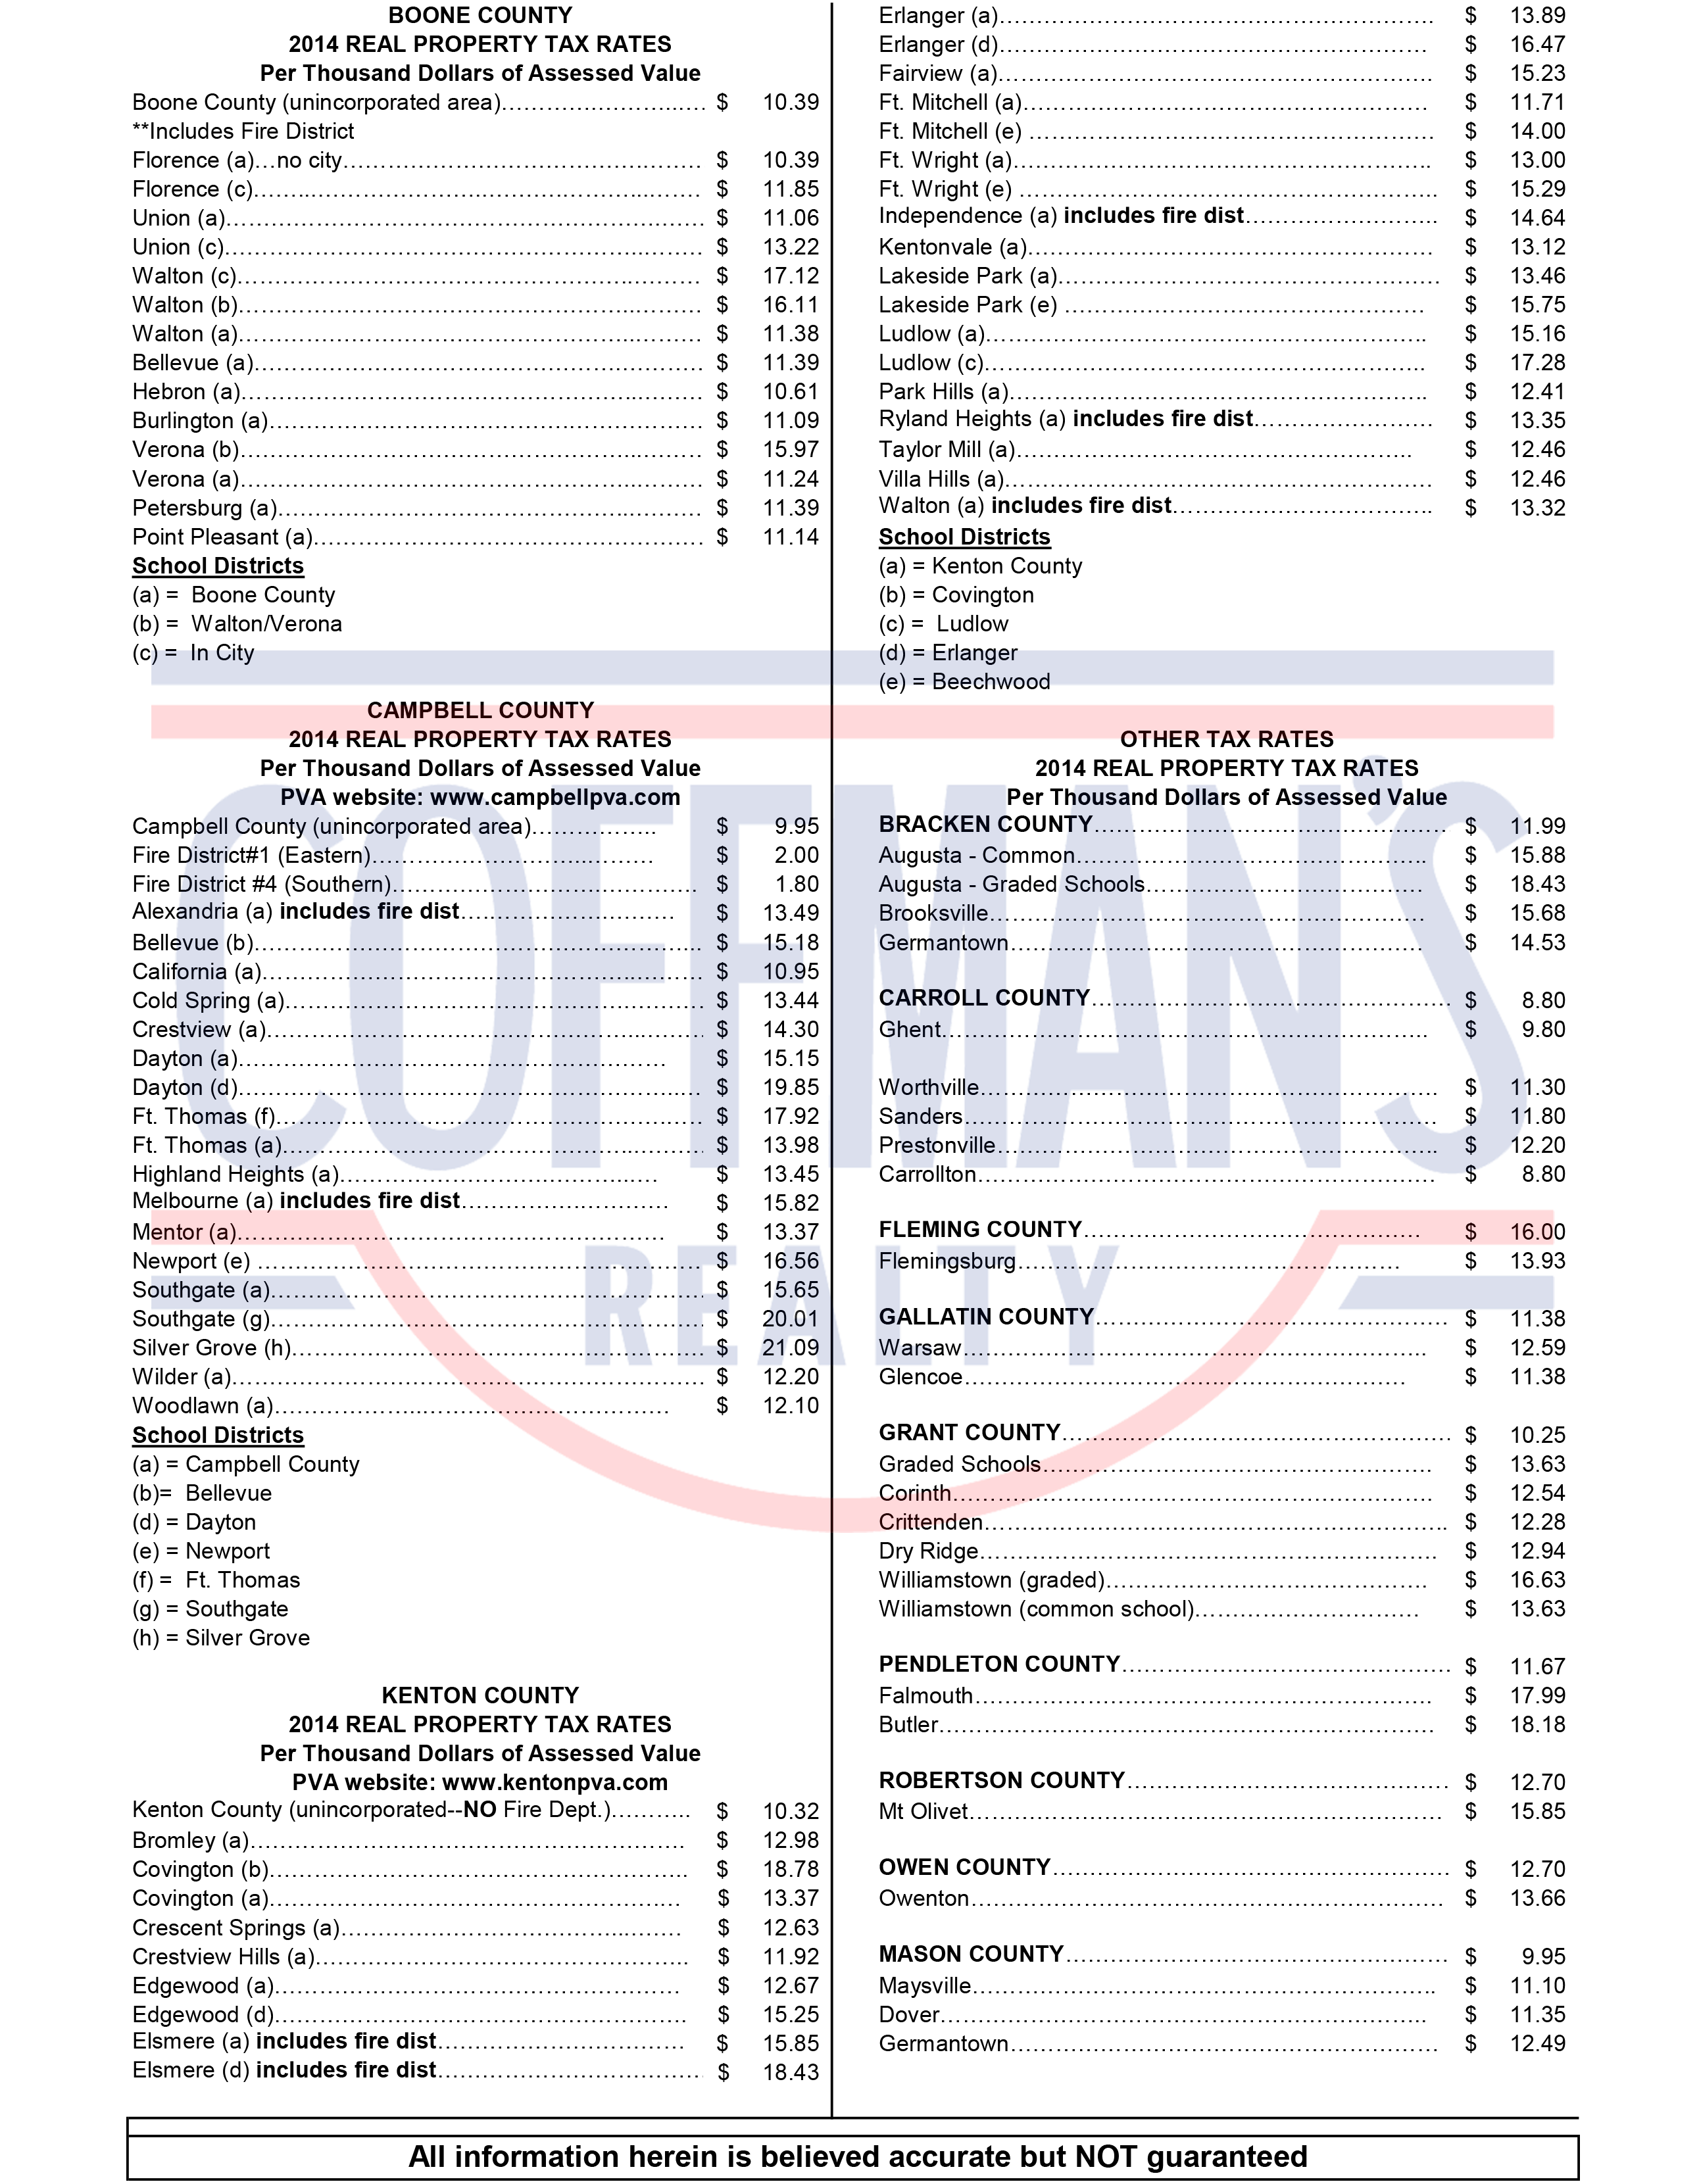 MLS Tax Rates 2014